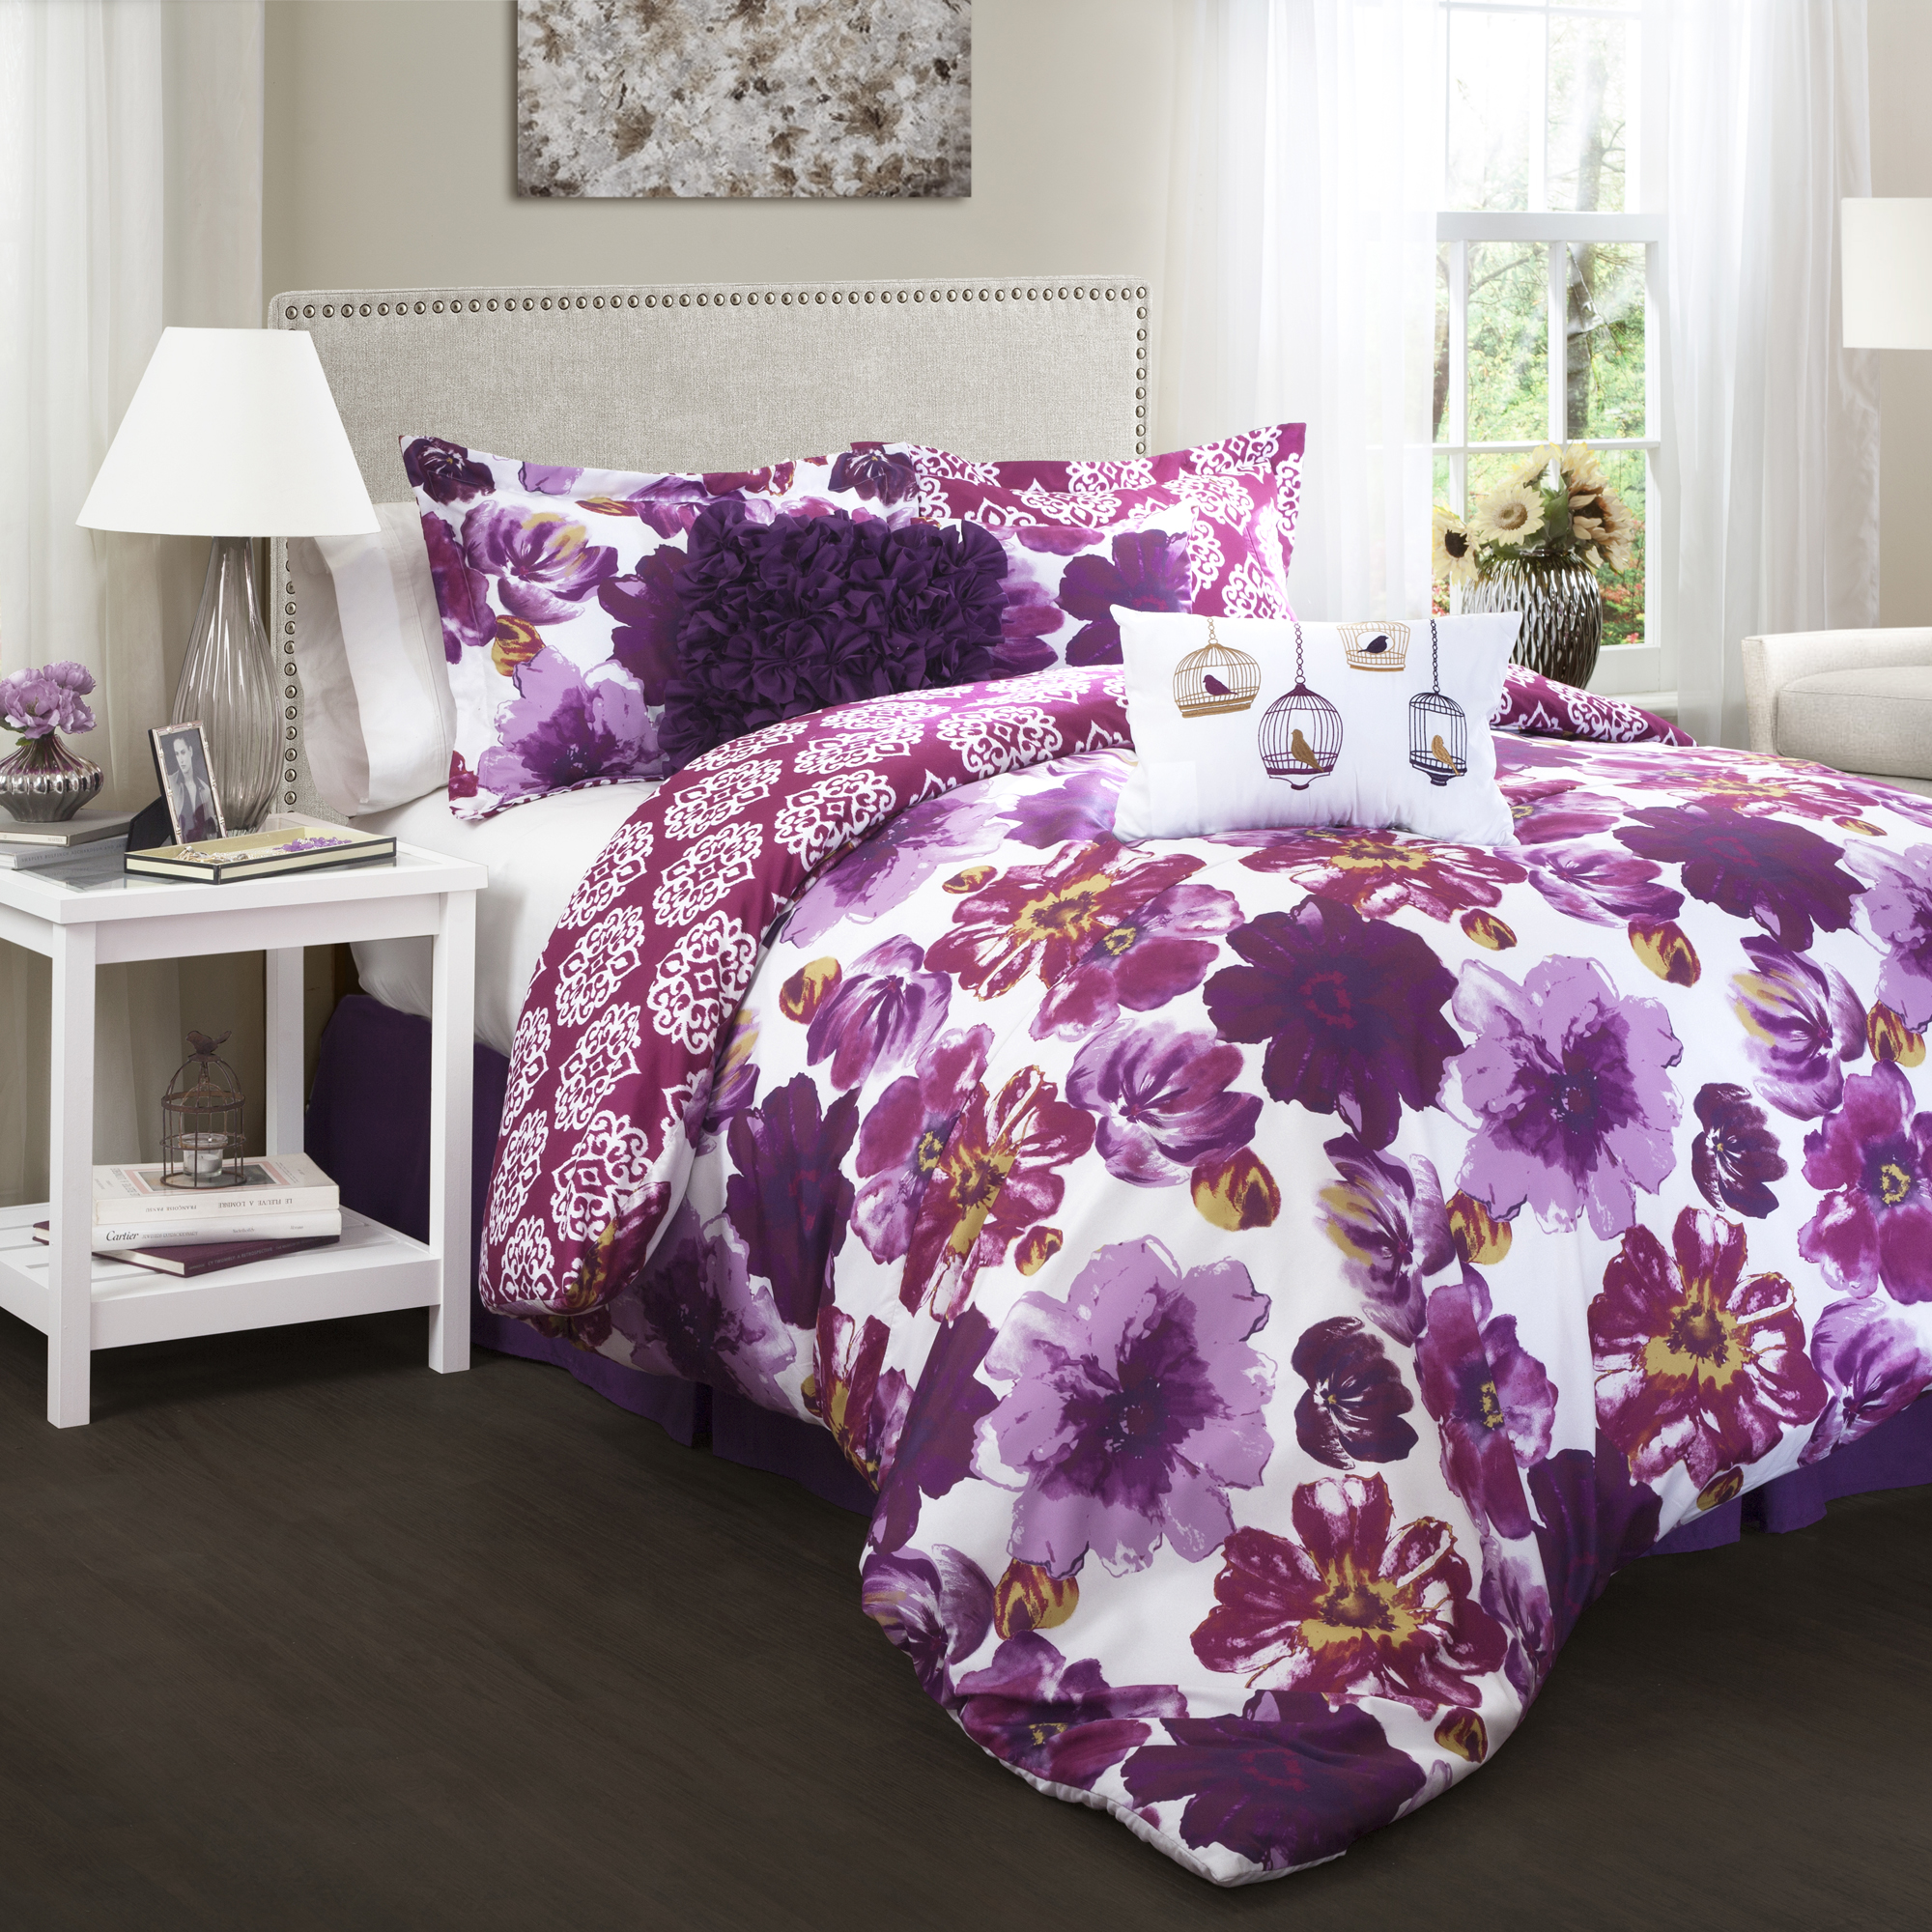 Lush Decor Leah Comforter Purple 7pc Set King